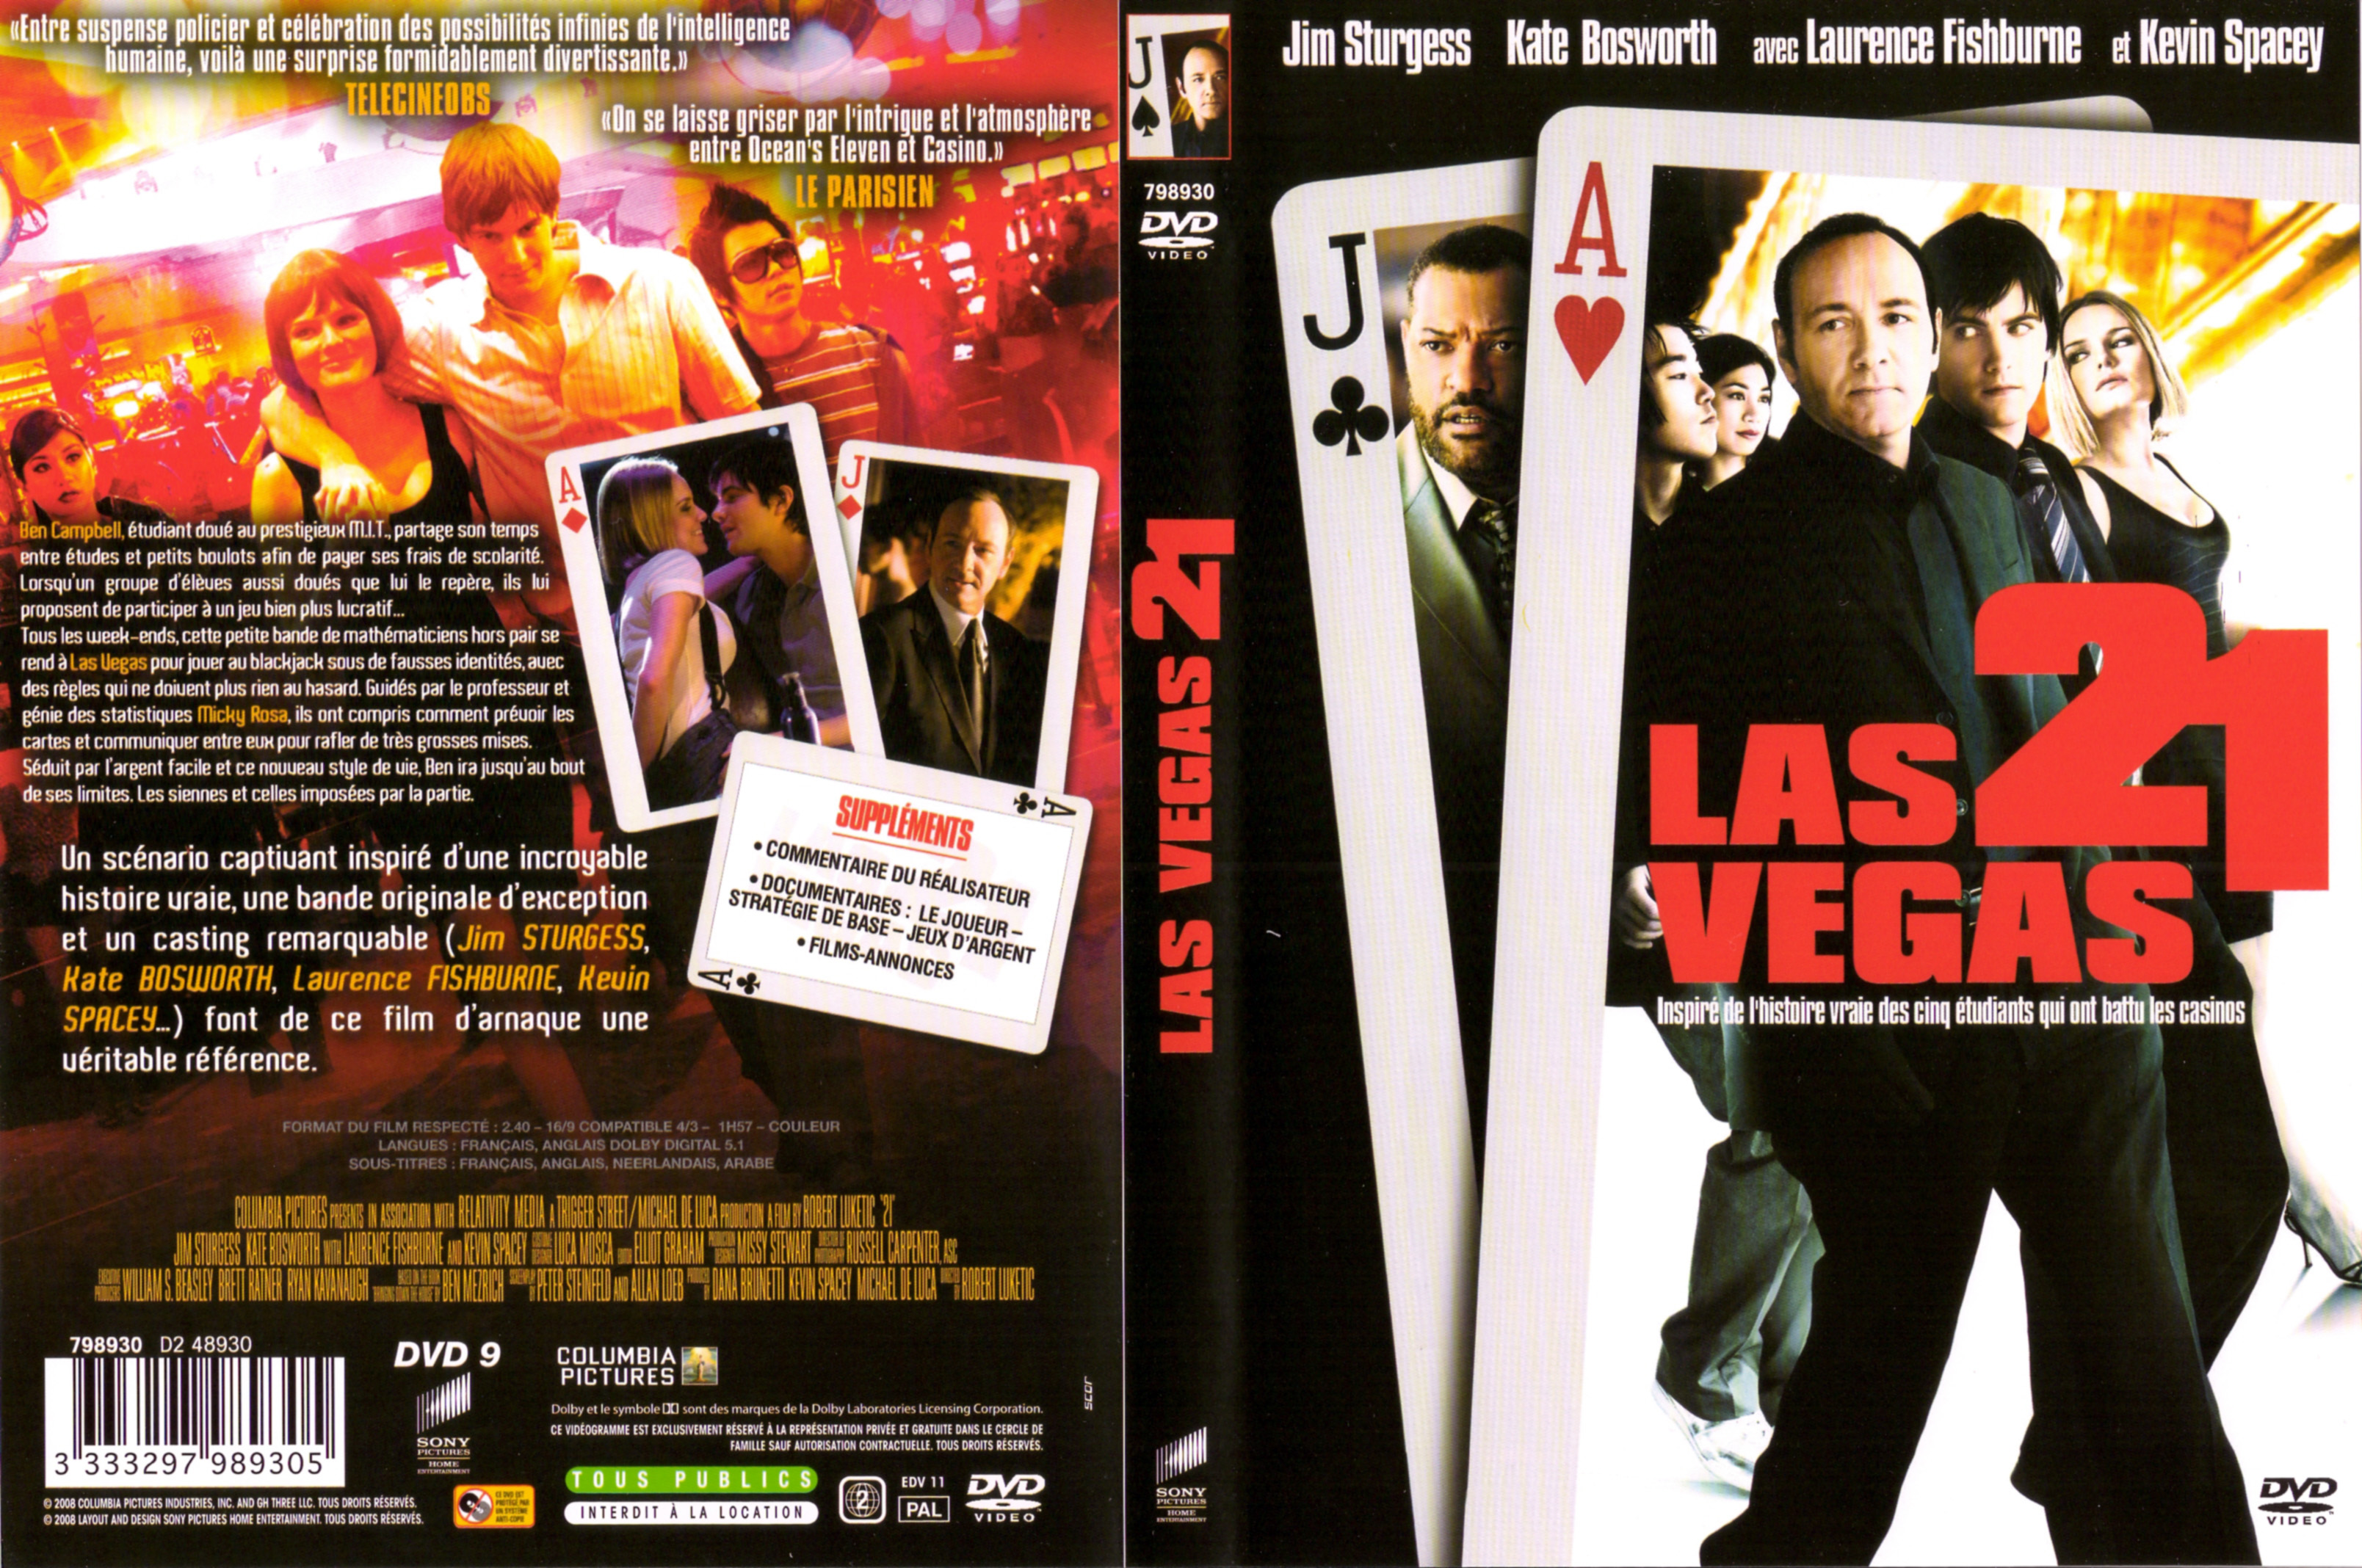 Jaquette DVD Las Vegas 21